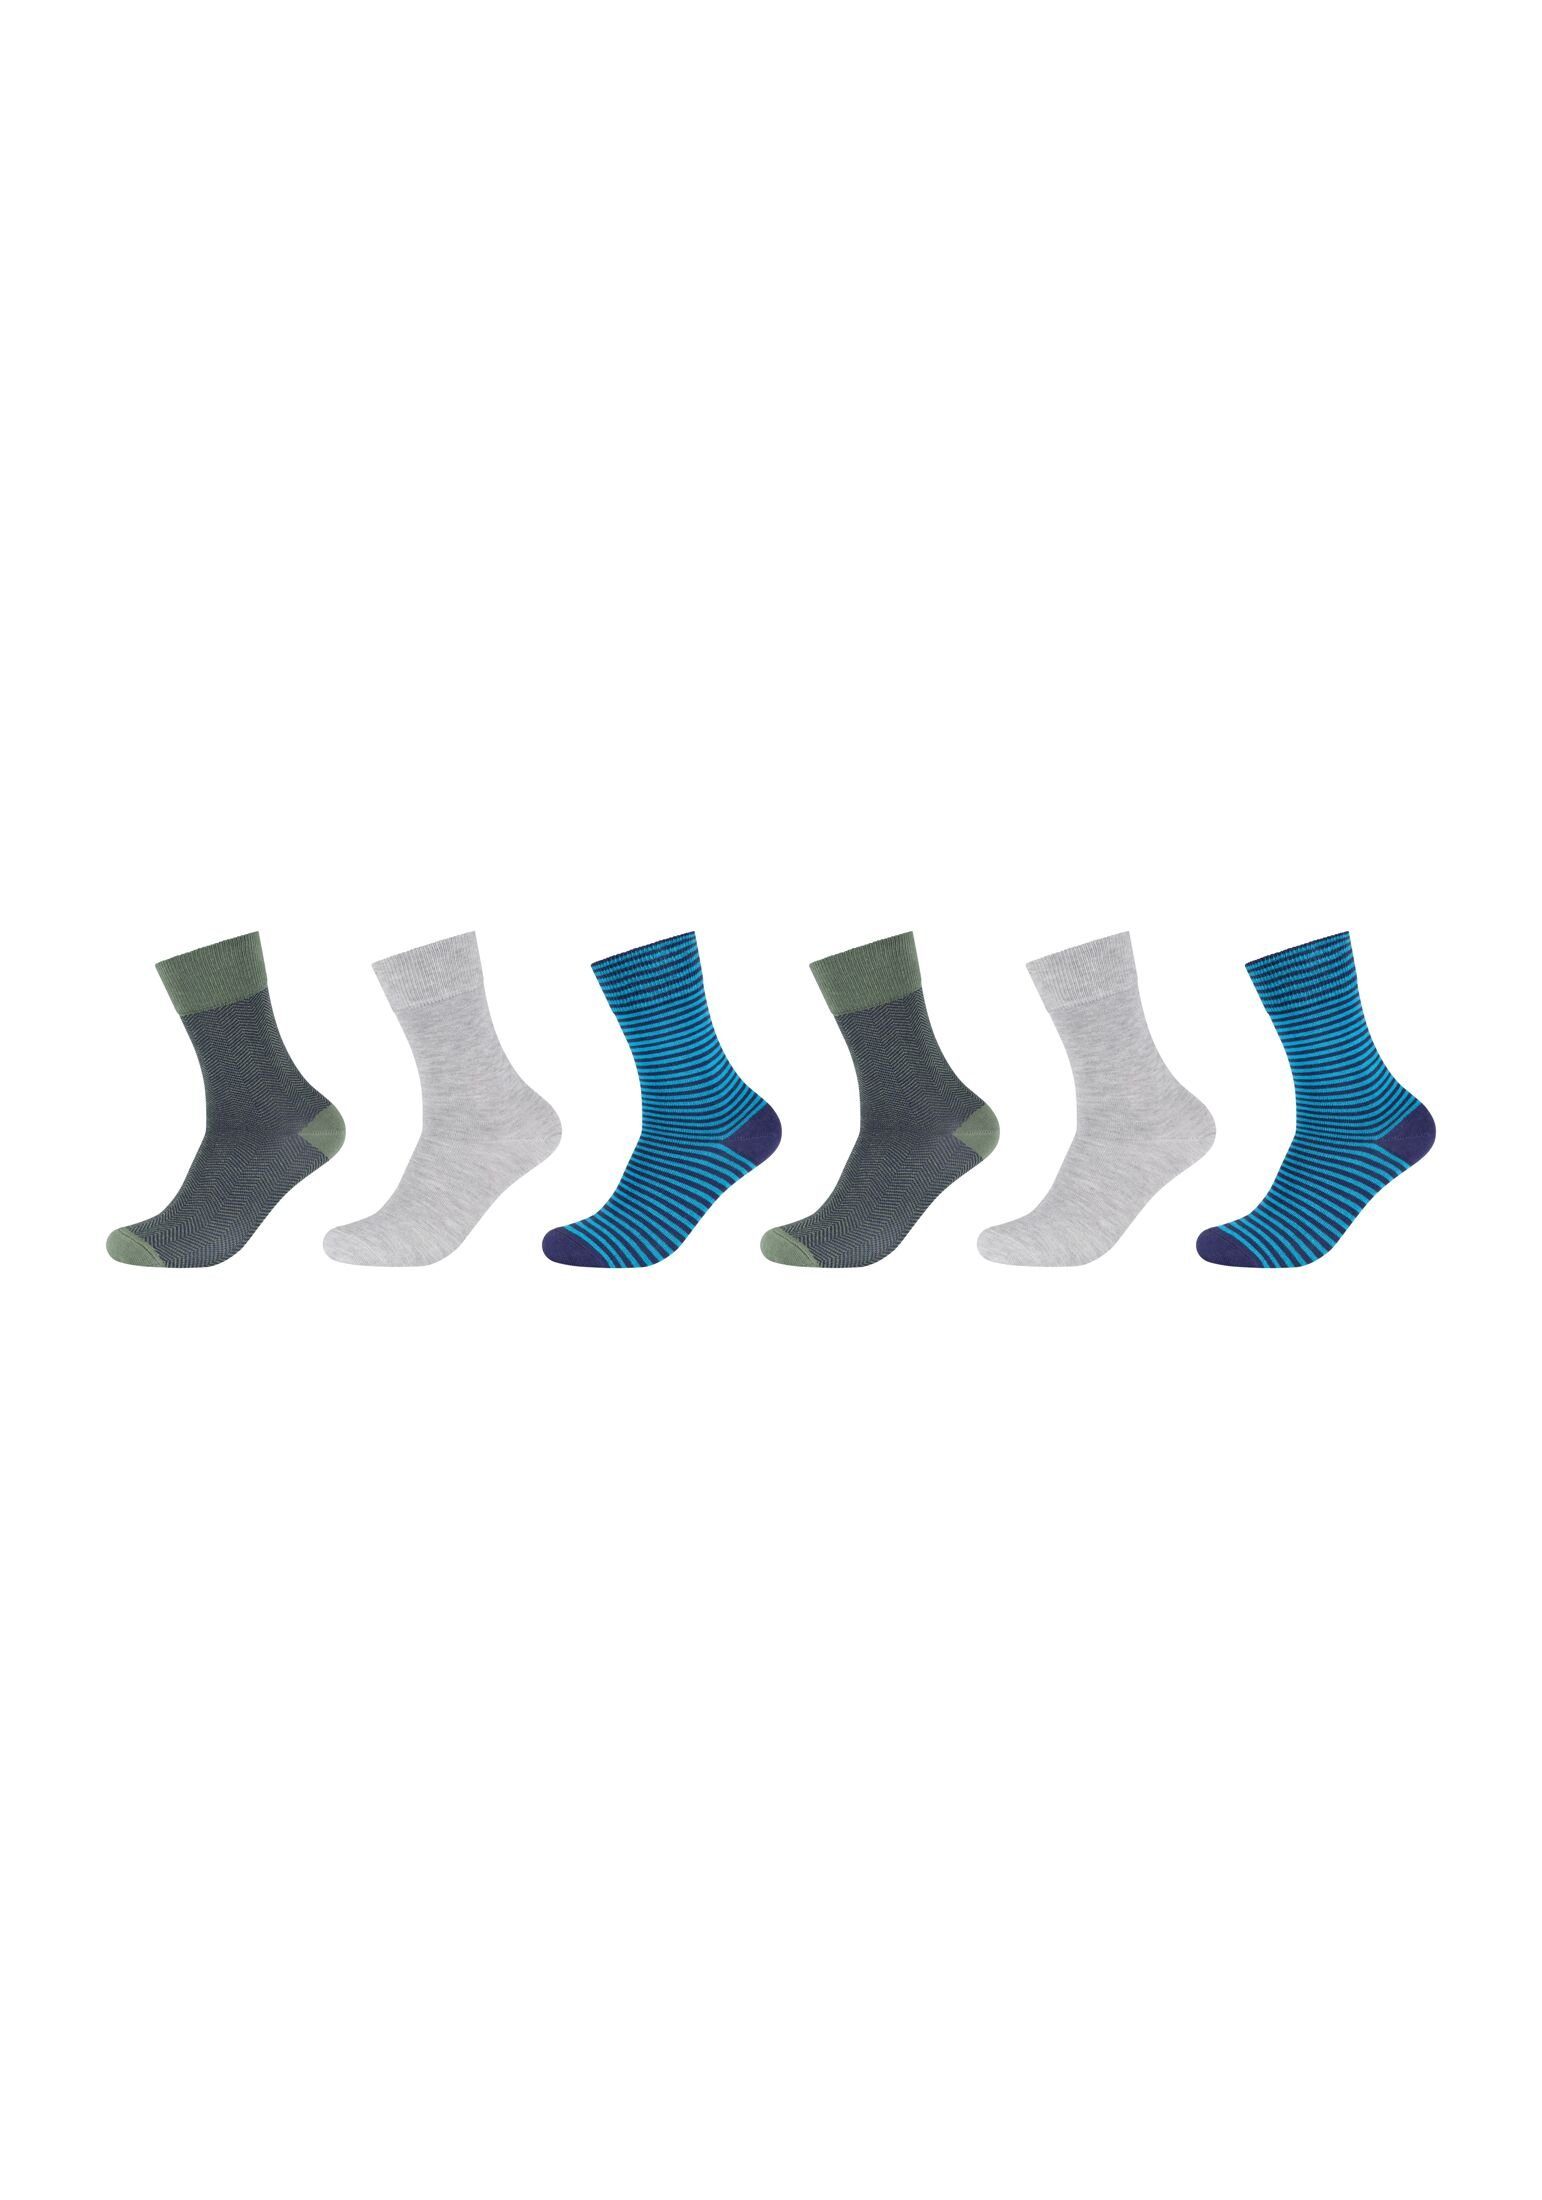 s.Oliver Socken Socken 6er Pack active blue